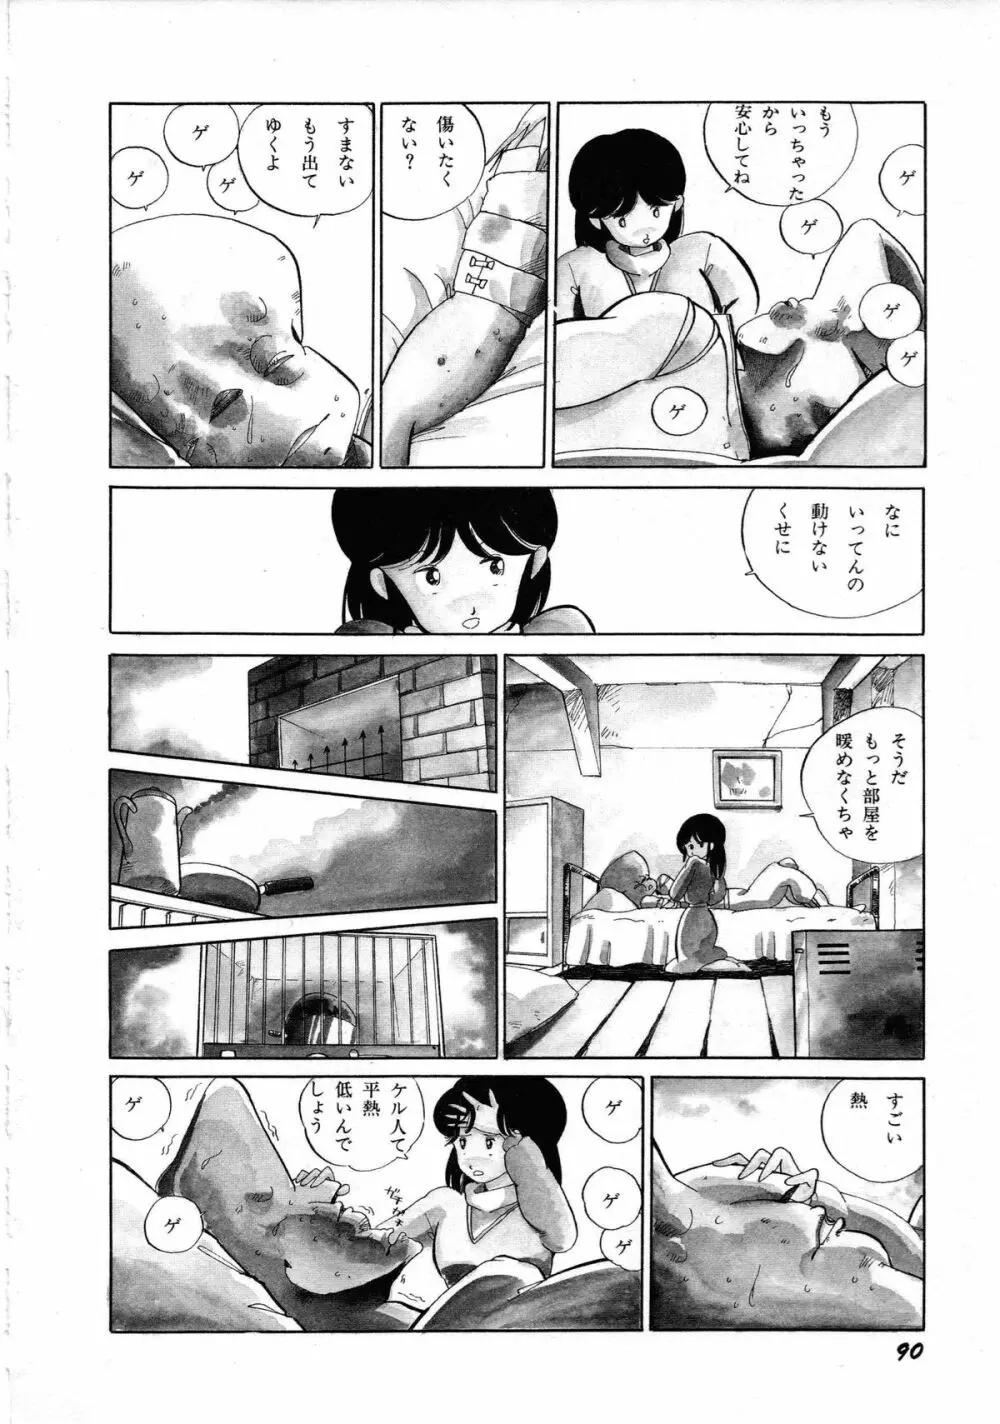 ロボット&美少女傑作選 レモン・ピープル1982-1986 94ページ